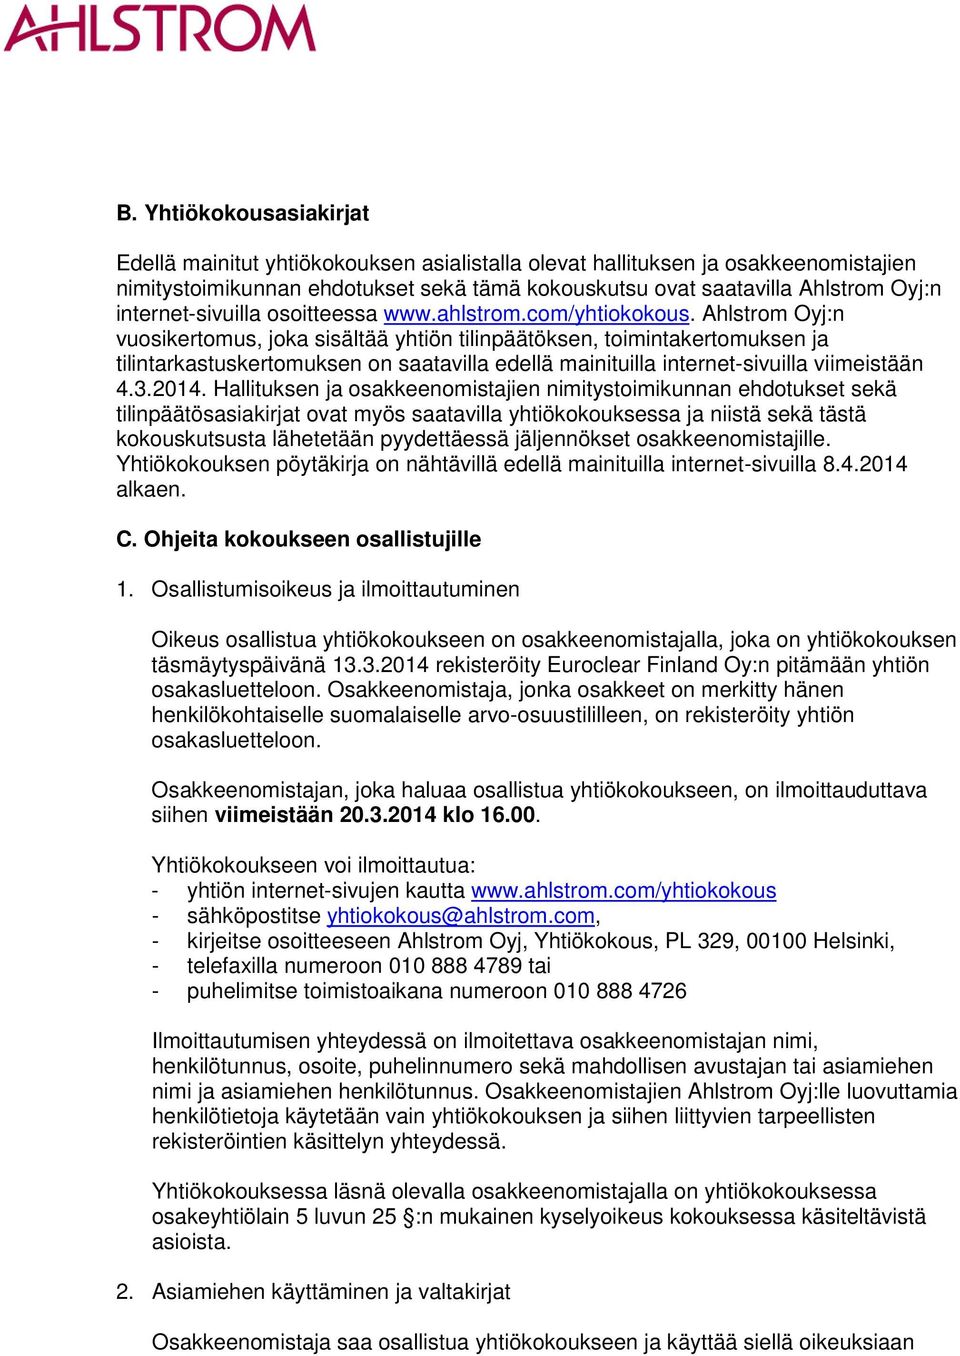 Ahlstrom Oyj:n vuosikertomus, joka sisältää yhtiön tilinpäätöksen, toimintakertomuksen ja tilintarkastuskertomuksen on saatavilla edellä mainituilla internet-sivuilla viimeistään 4.3.2014.